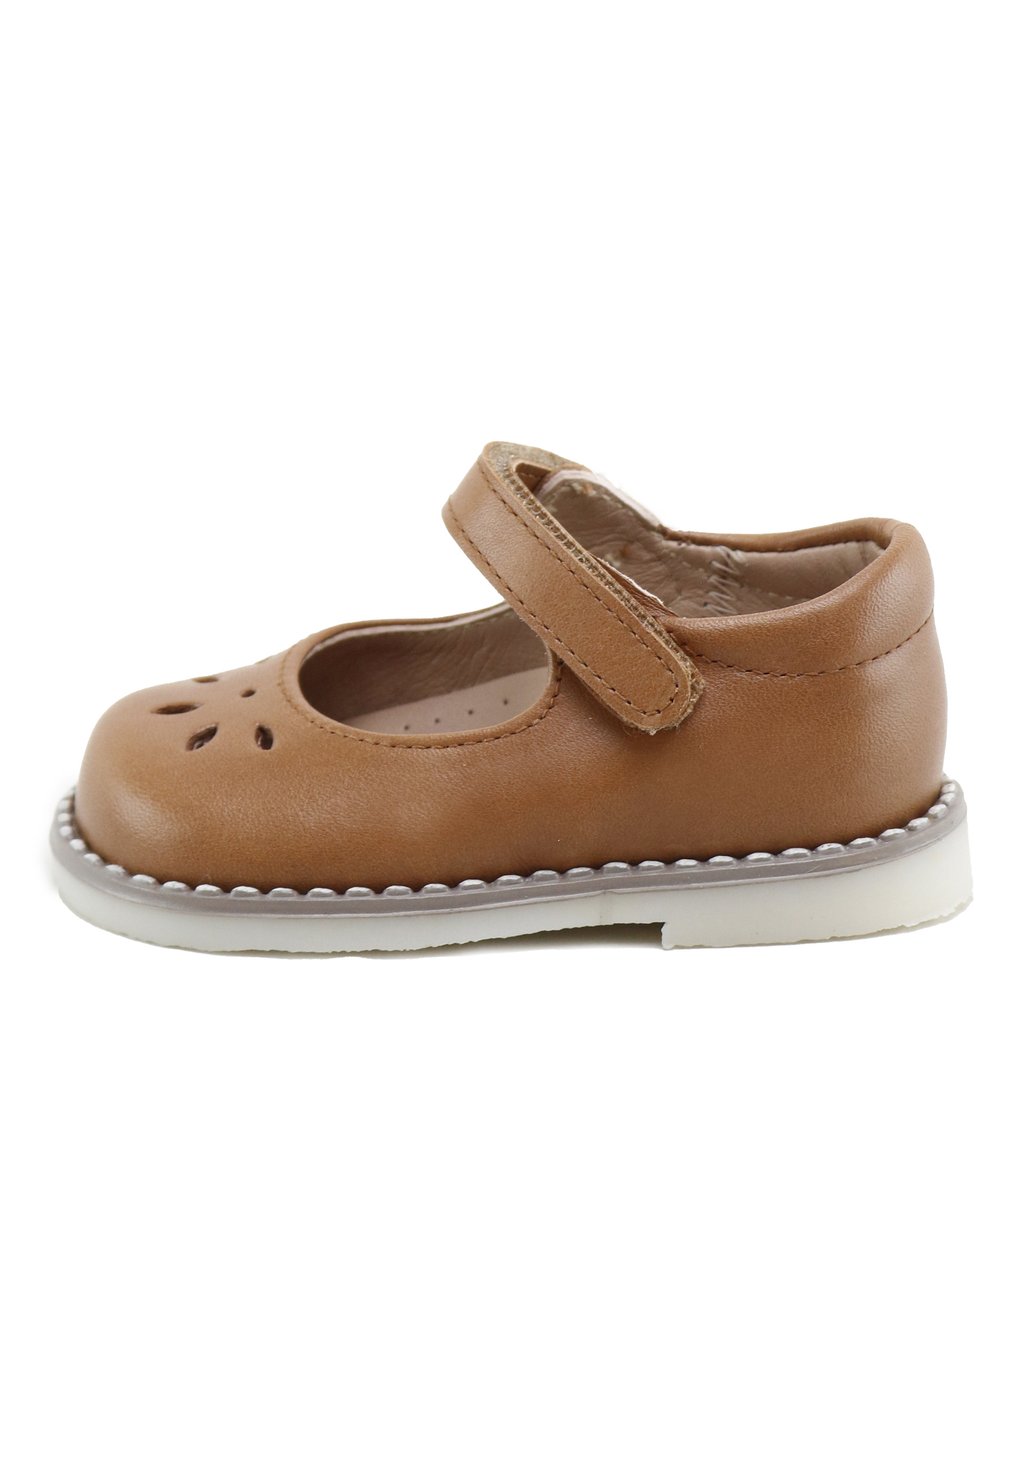 Детская обувь MERCEDITAS CUTE Eli 1957, коричневый